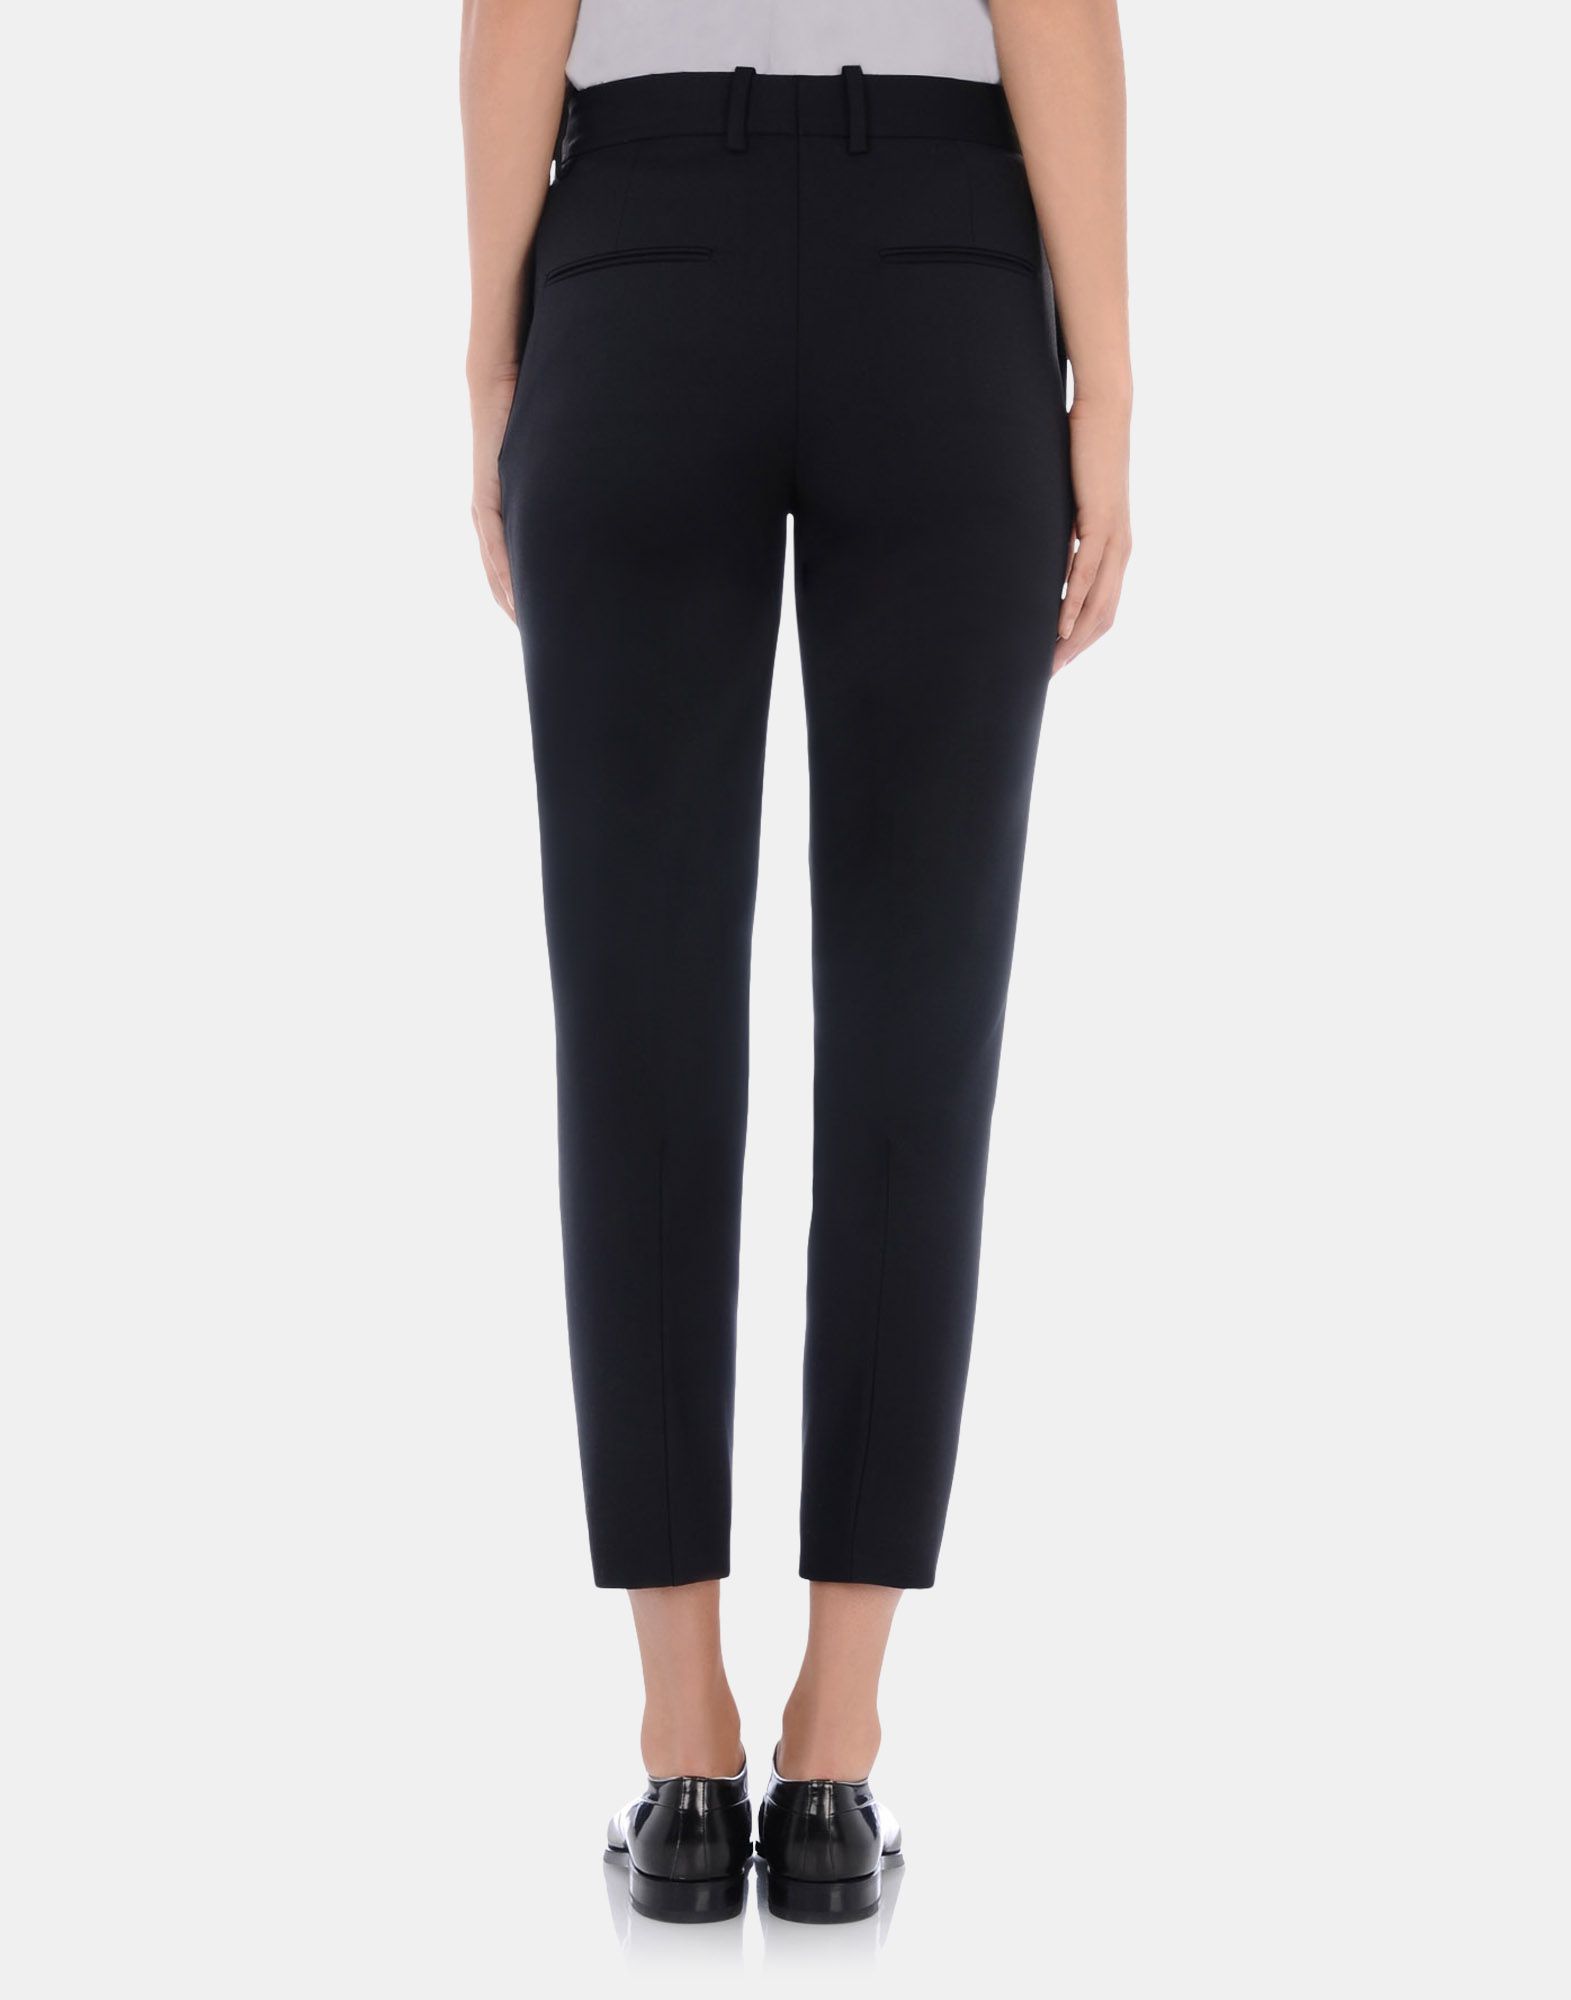 Tailored pants Women - Pants Women on Jil Sander Online Store